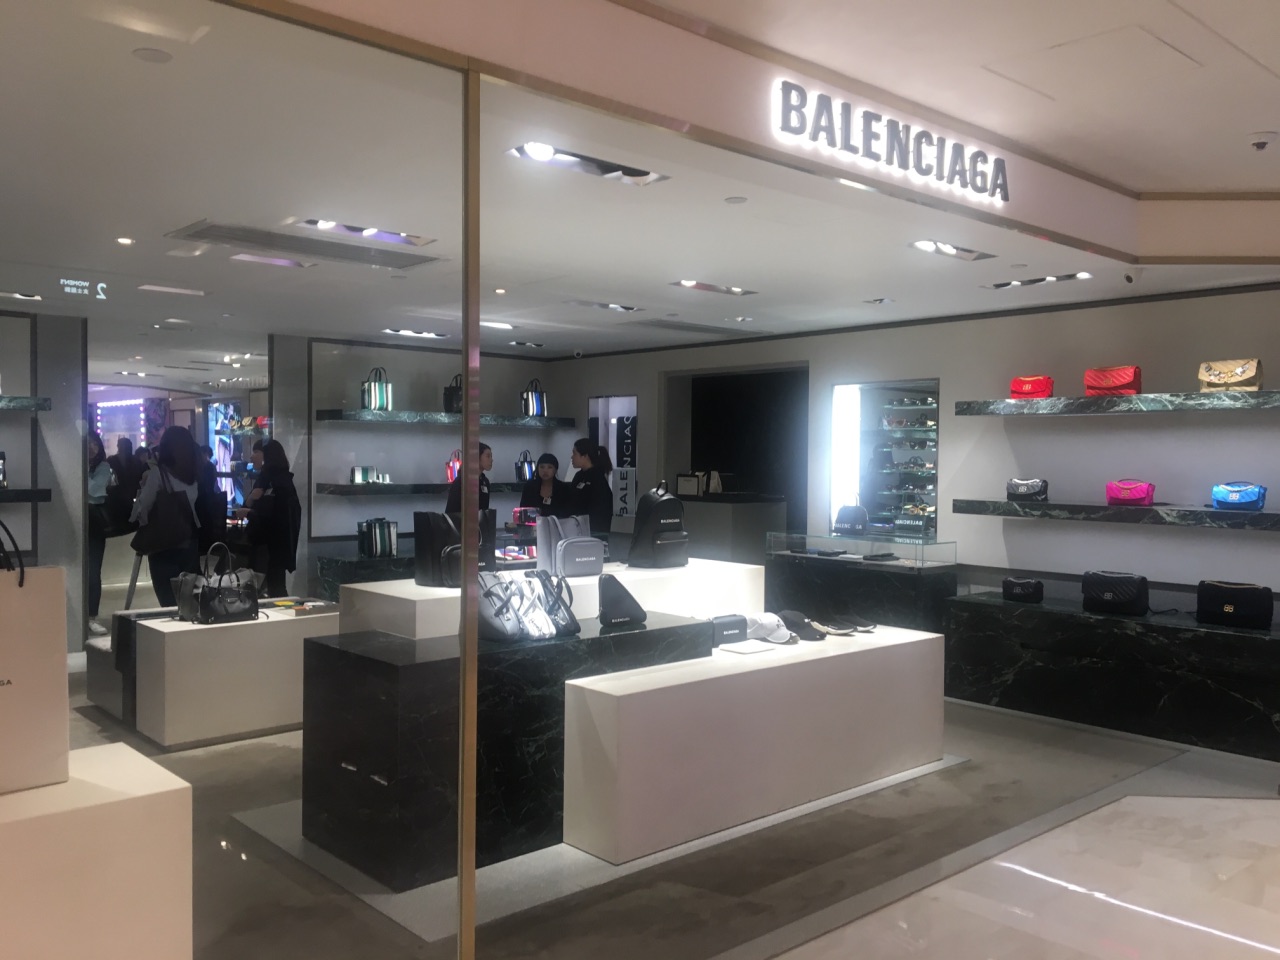 【携程攻略】香港balenciaga(崇光百货店)购物,巴黎世家的设计我还真